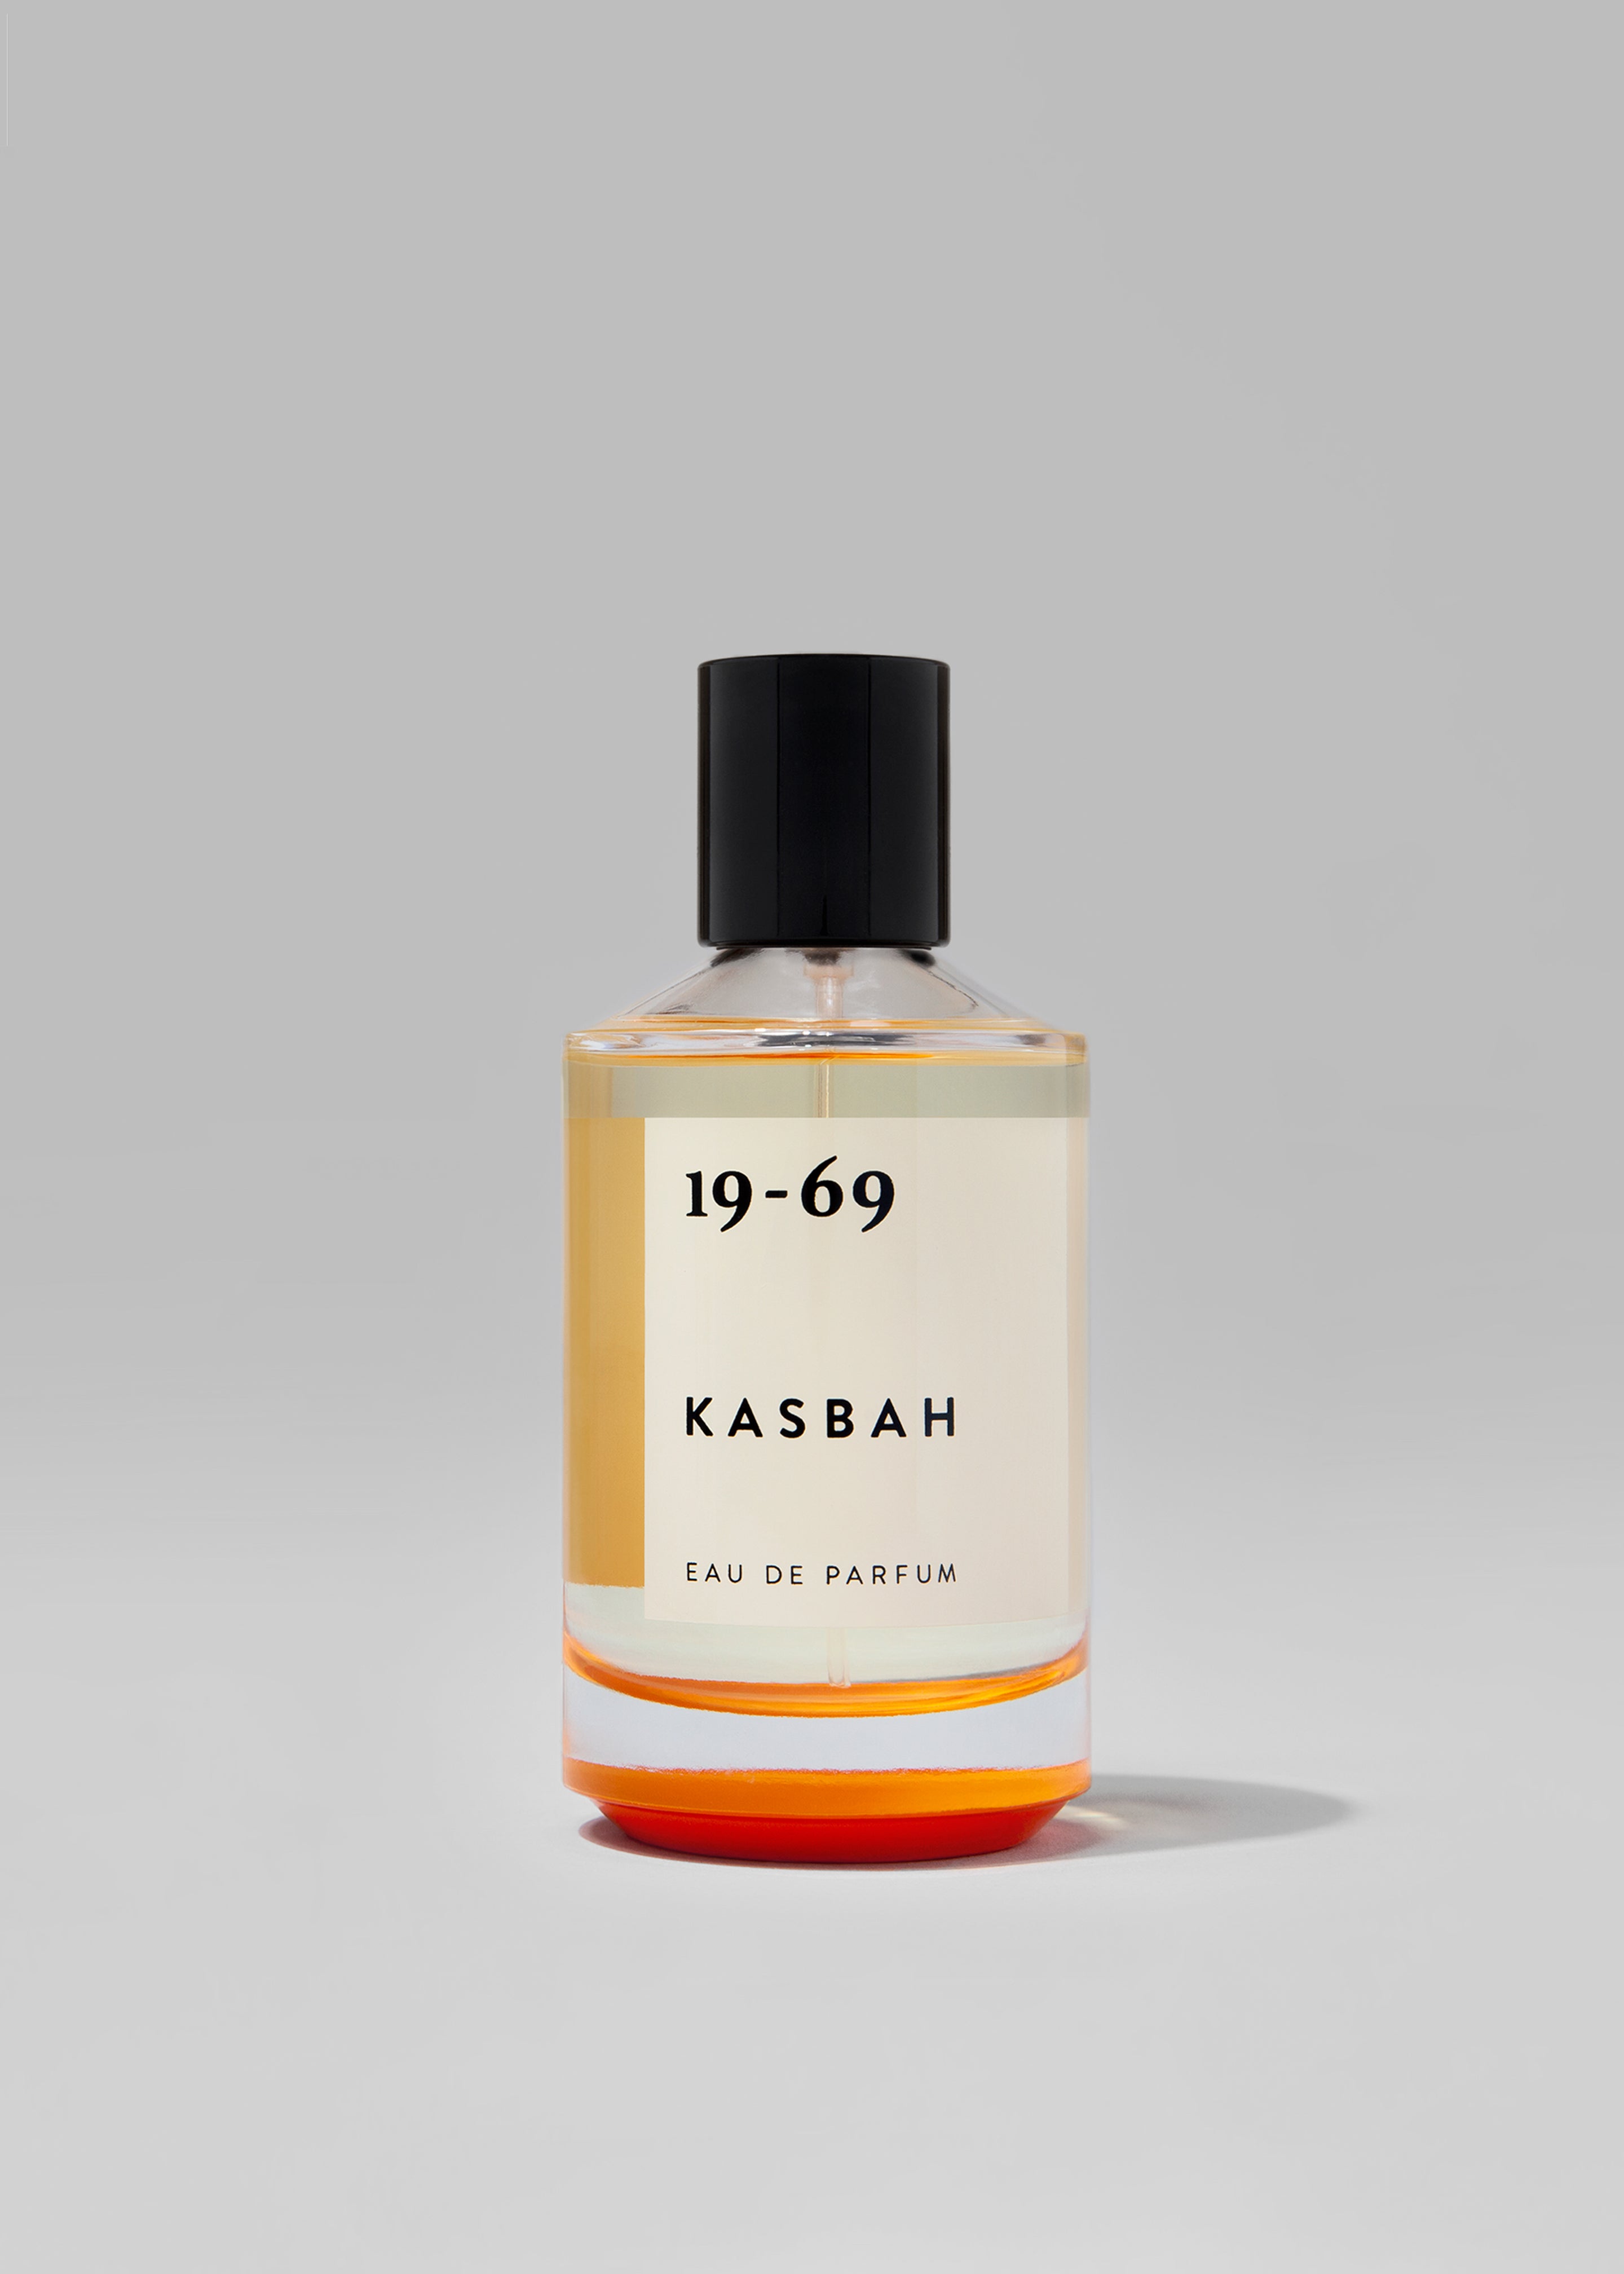 19-69 Kasbah Eau de Parfum - 1